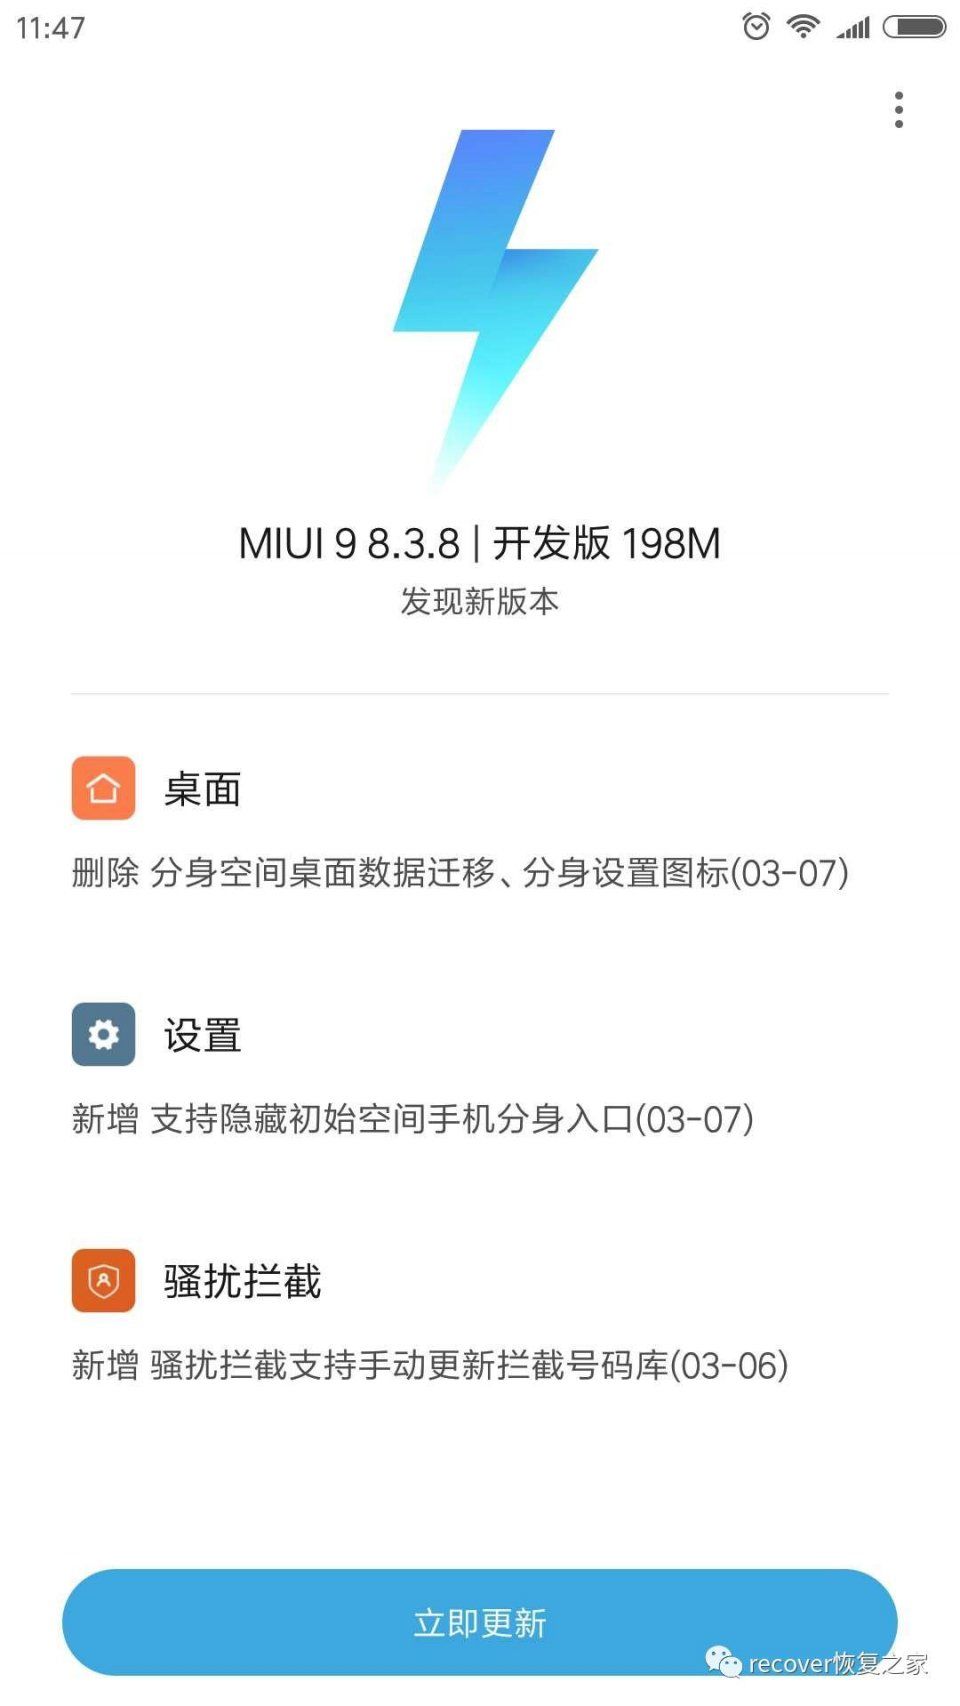 小米推送MIUI9 8.3.8更新:隐藏手机分身入口 手